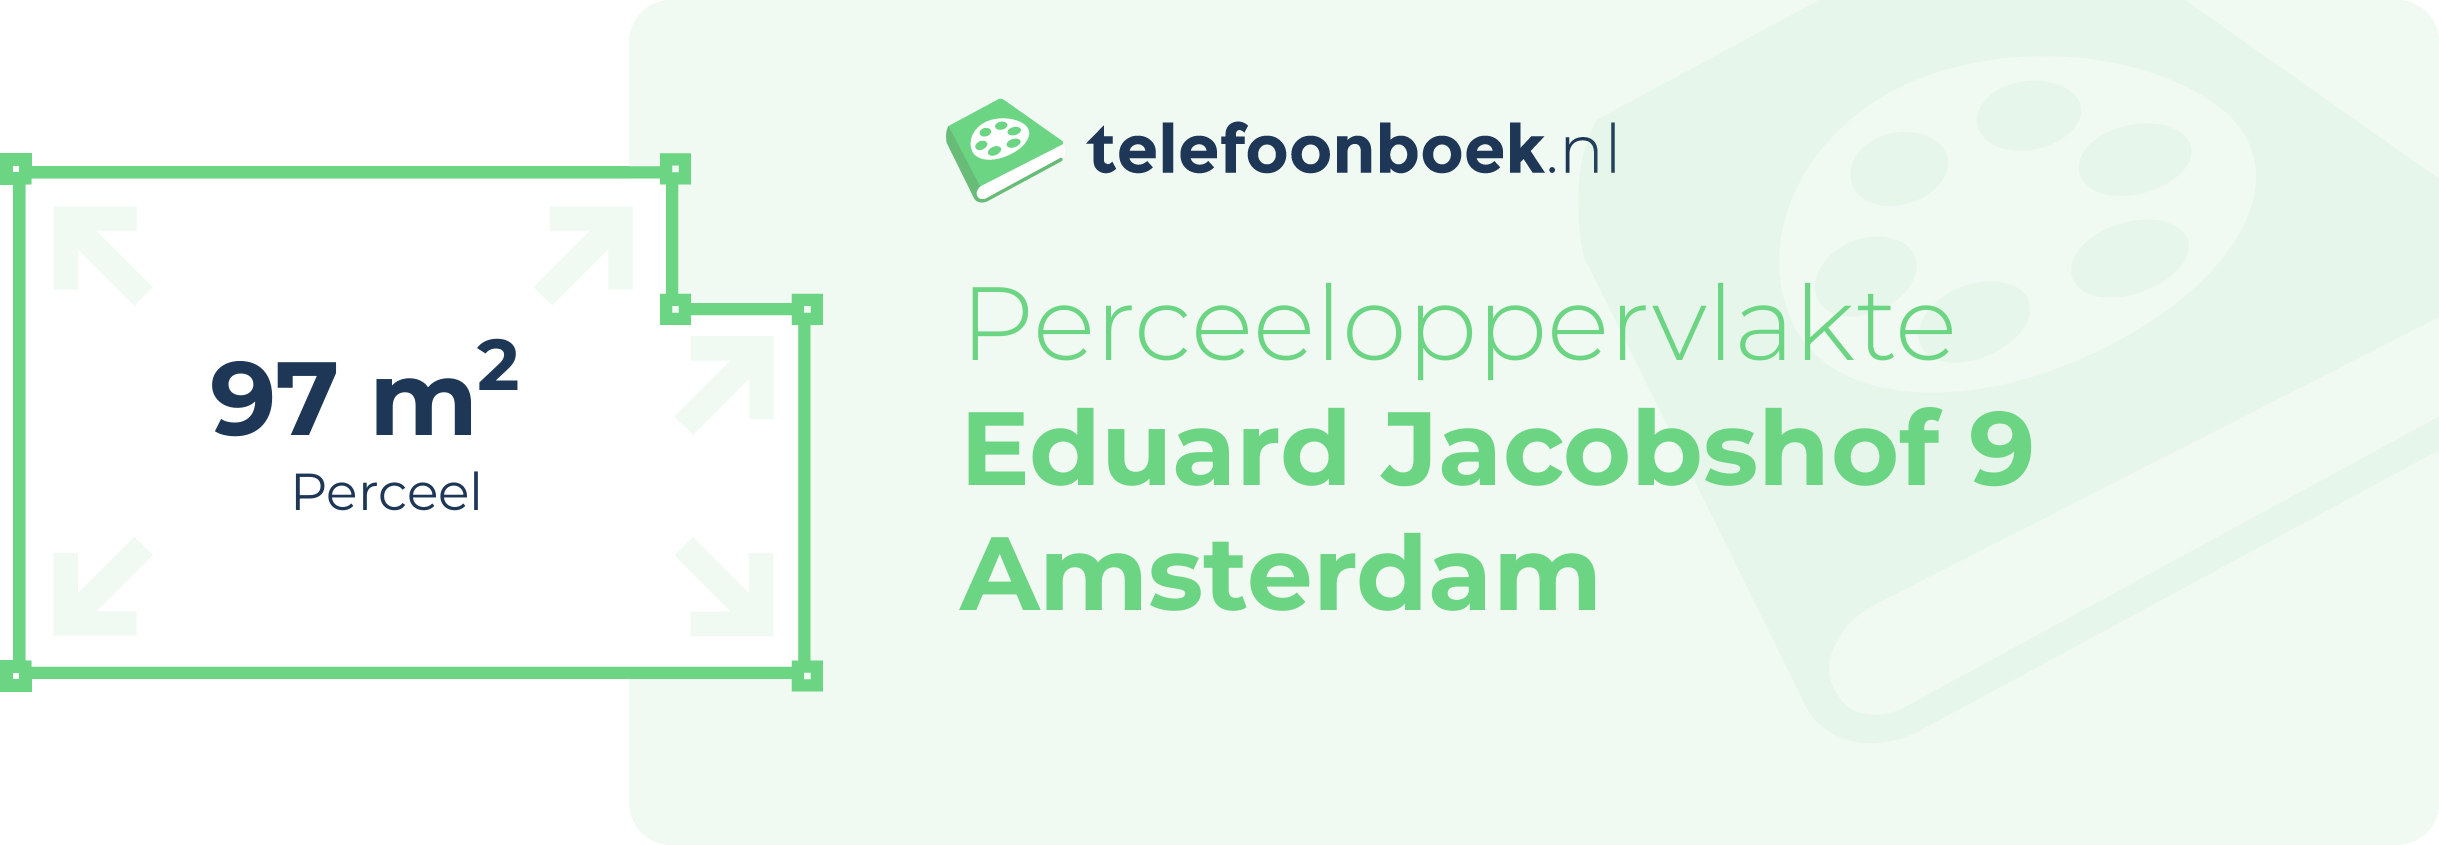 Perceeloppervlakte Eduard Jacobshof 9 Amsterdam